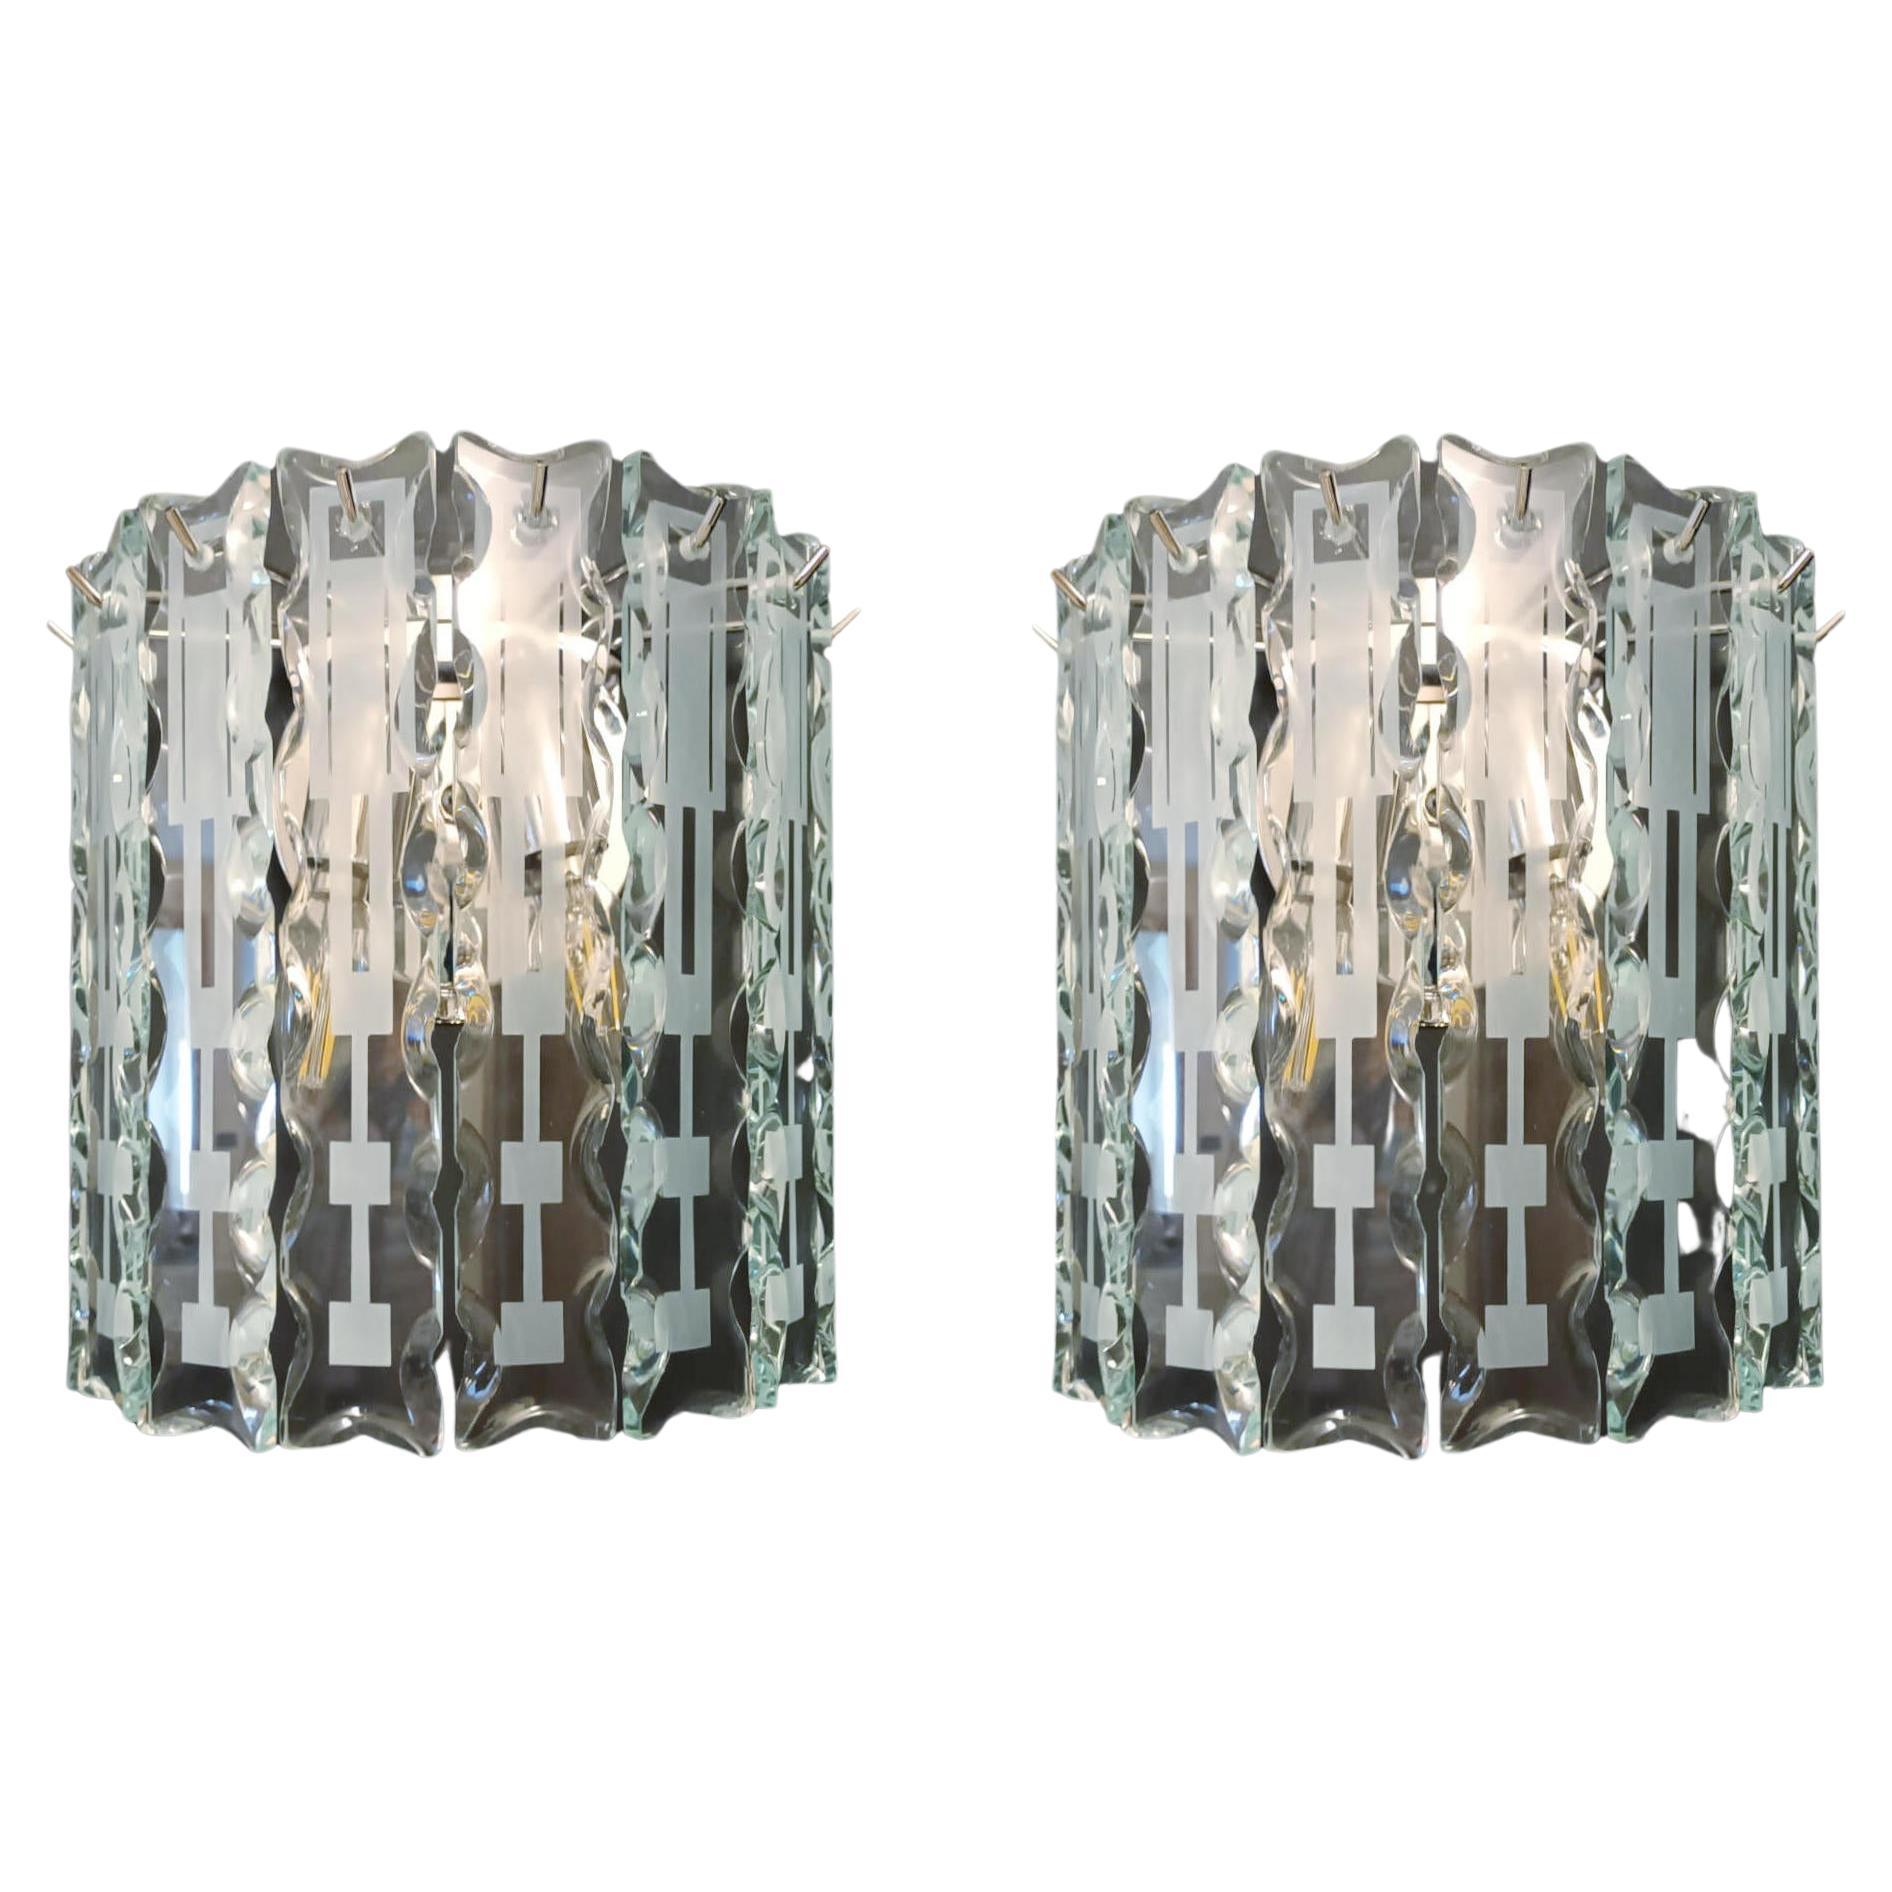 Paire d'appliques biseautées de Cristal Arte - 3 paires disponibles